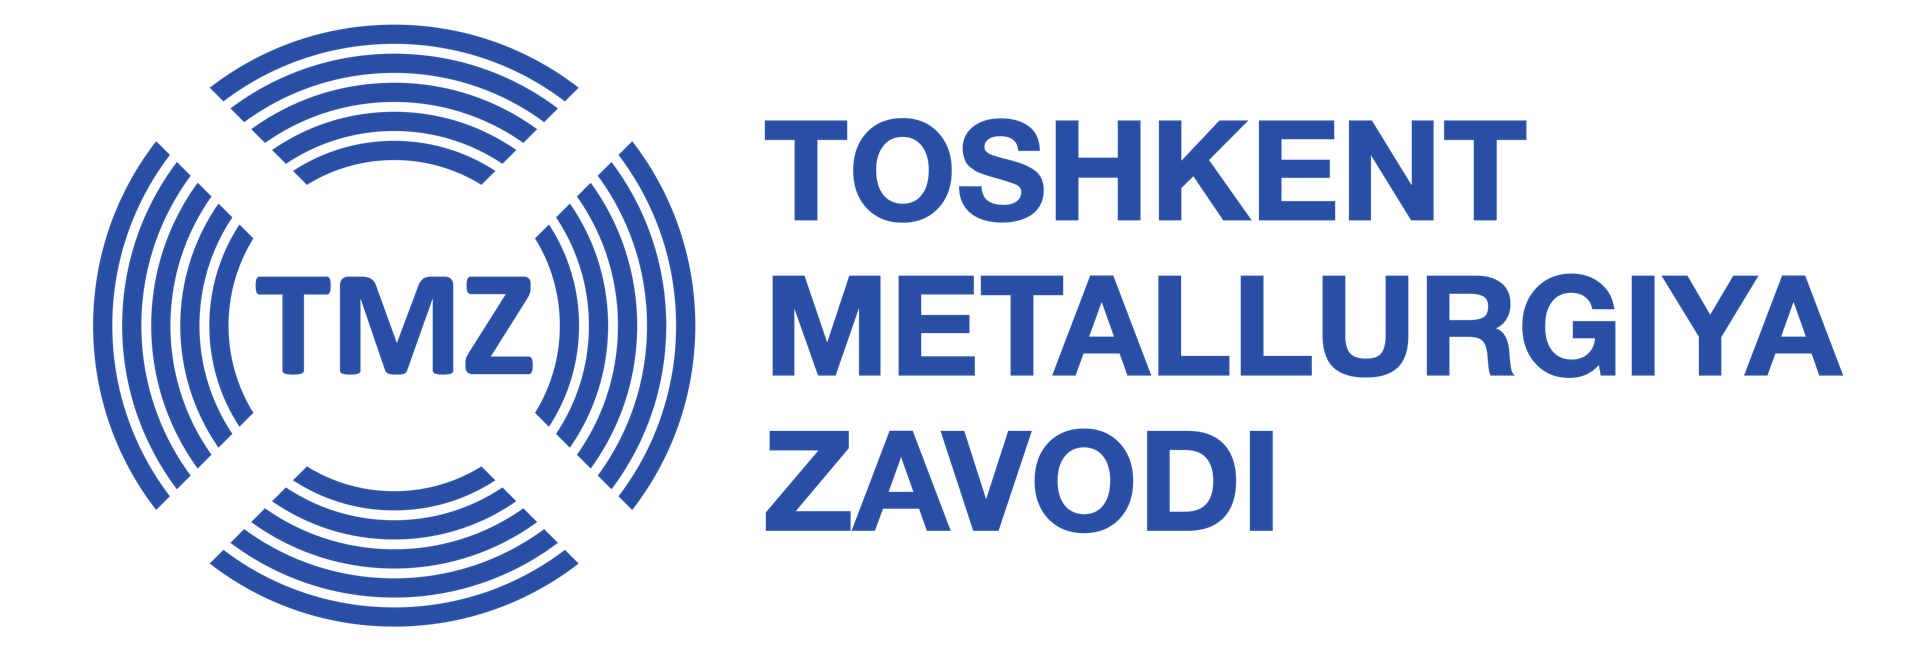 Toshkent Metallurgiya Zavodi (TMZ) üretim kapasitesini artıyor 